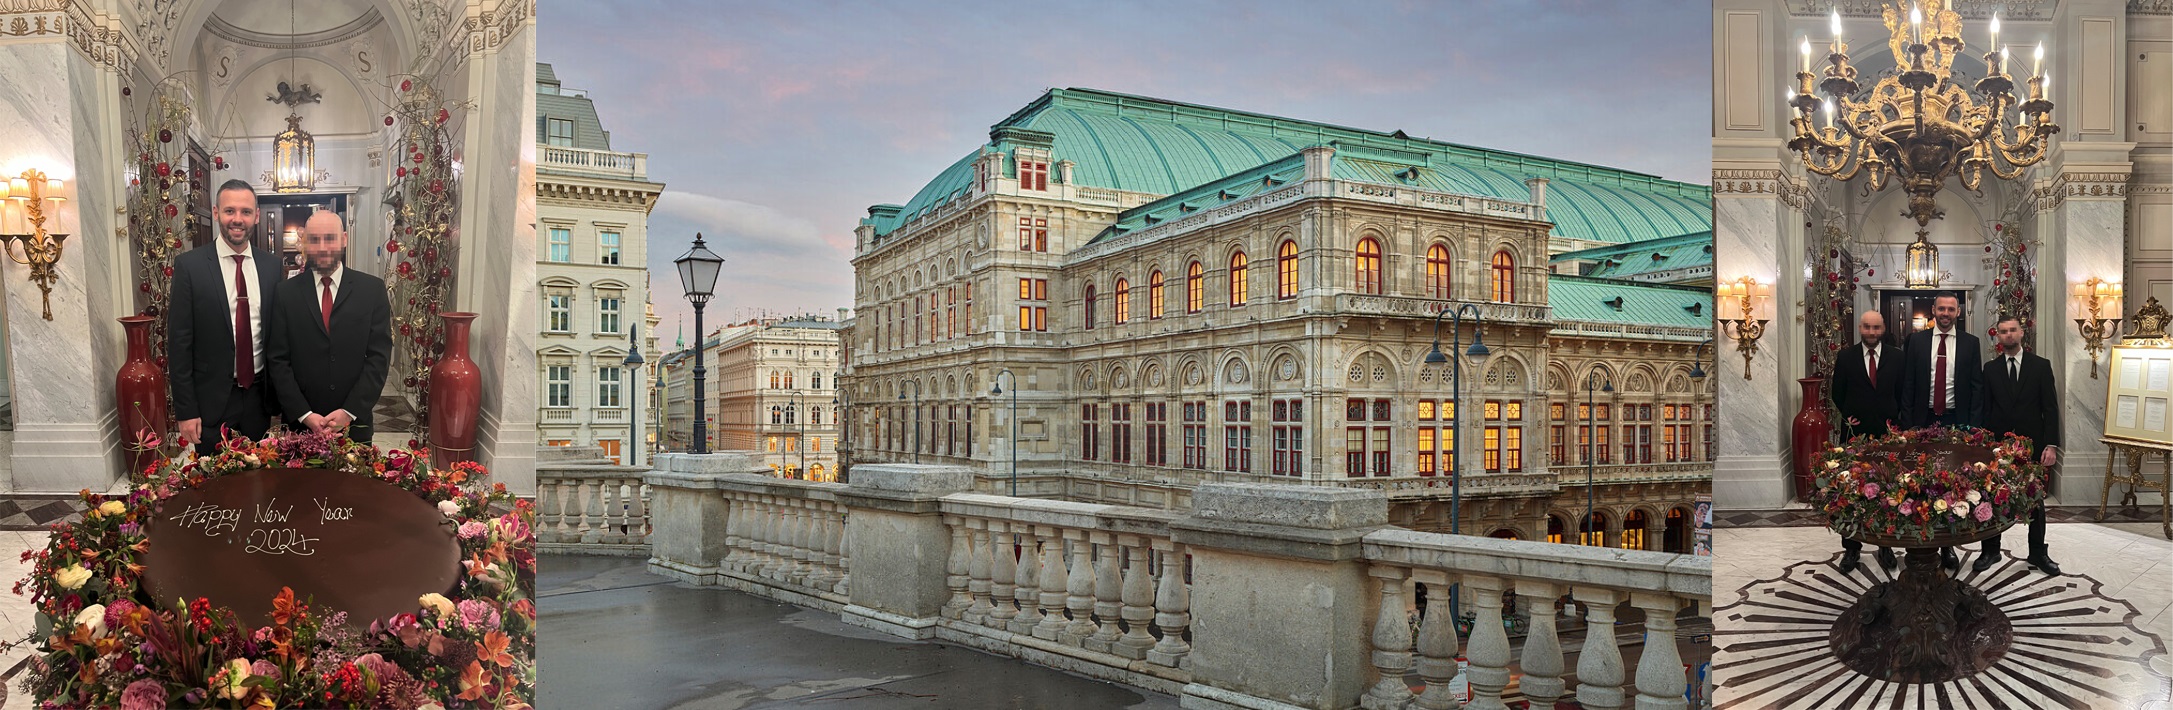 Hotelsecurity - Jobs Detektiv Wien